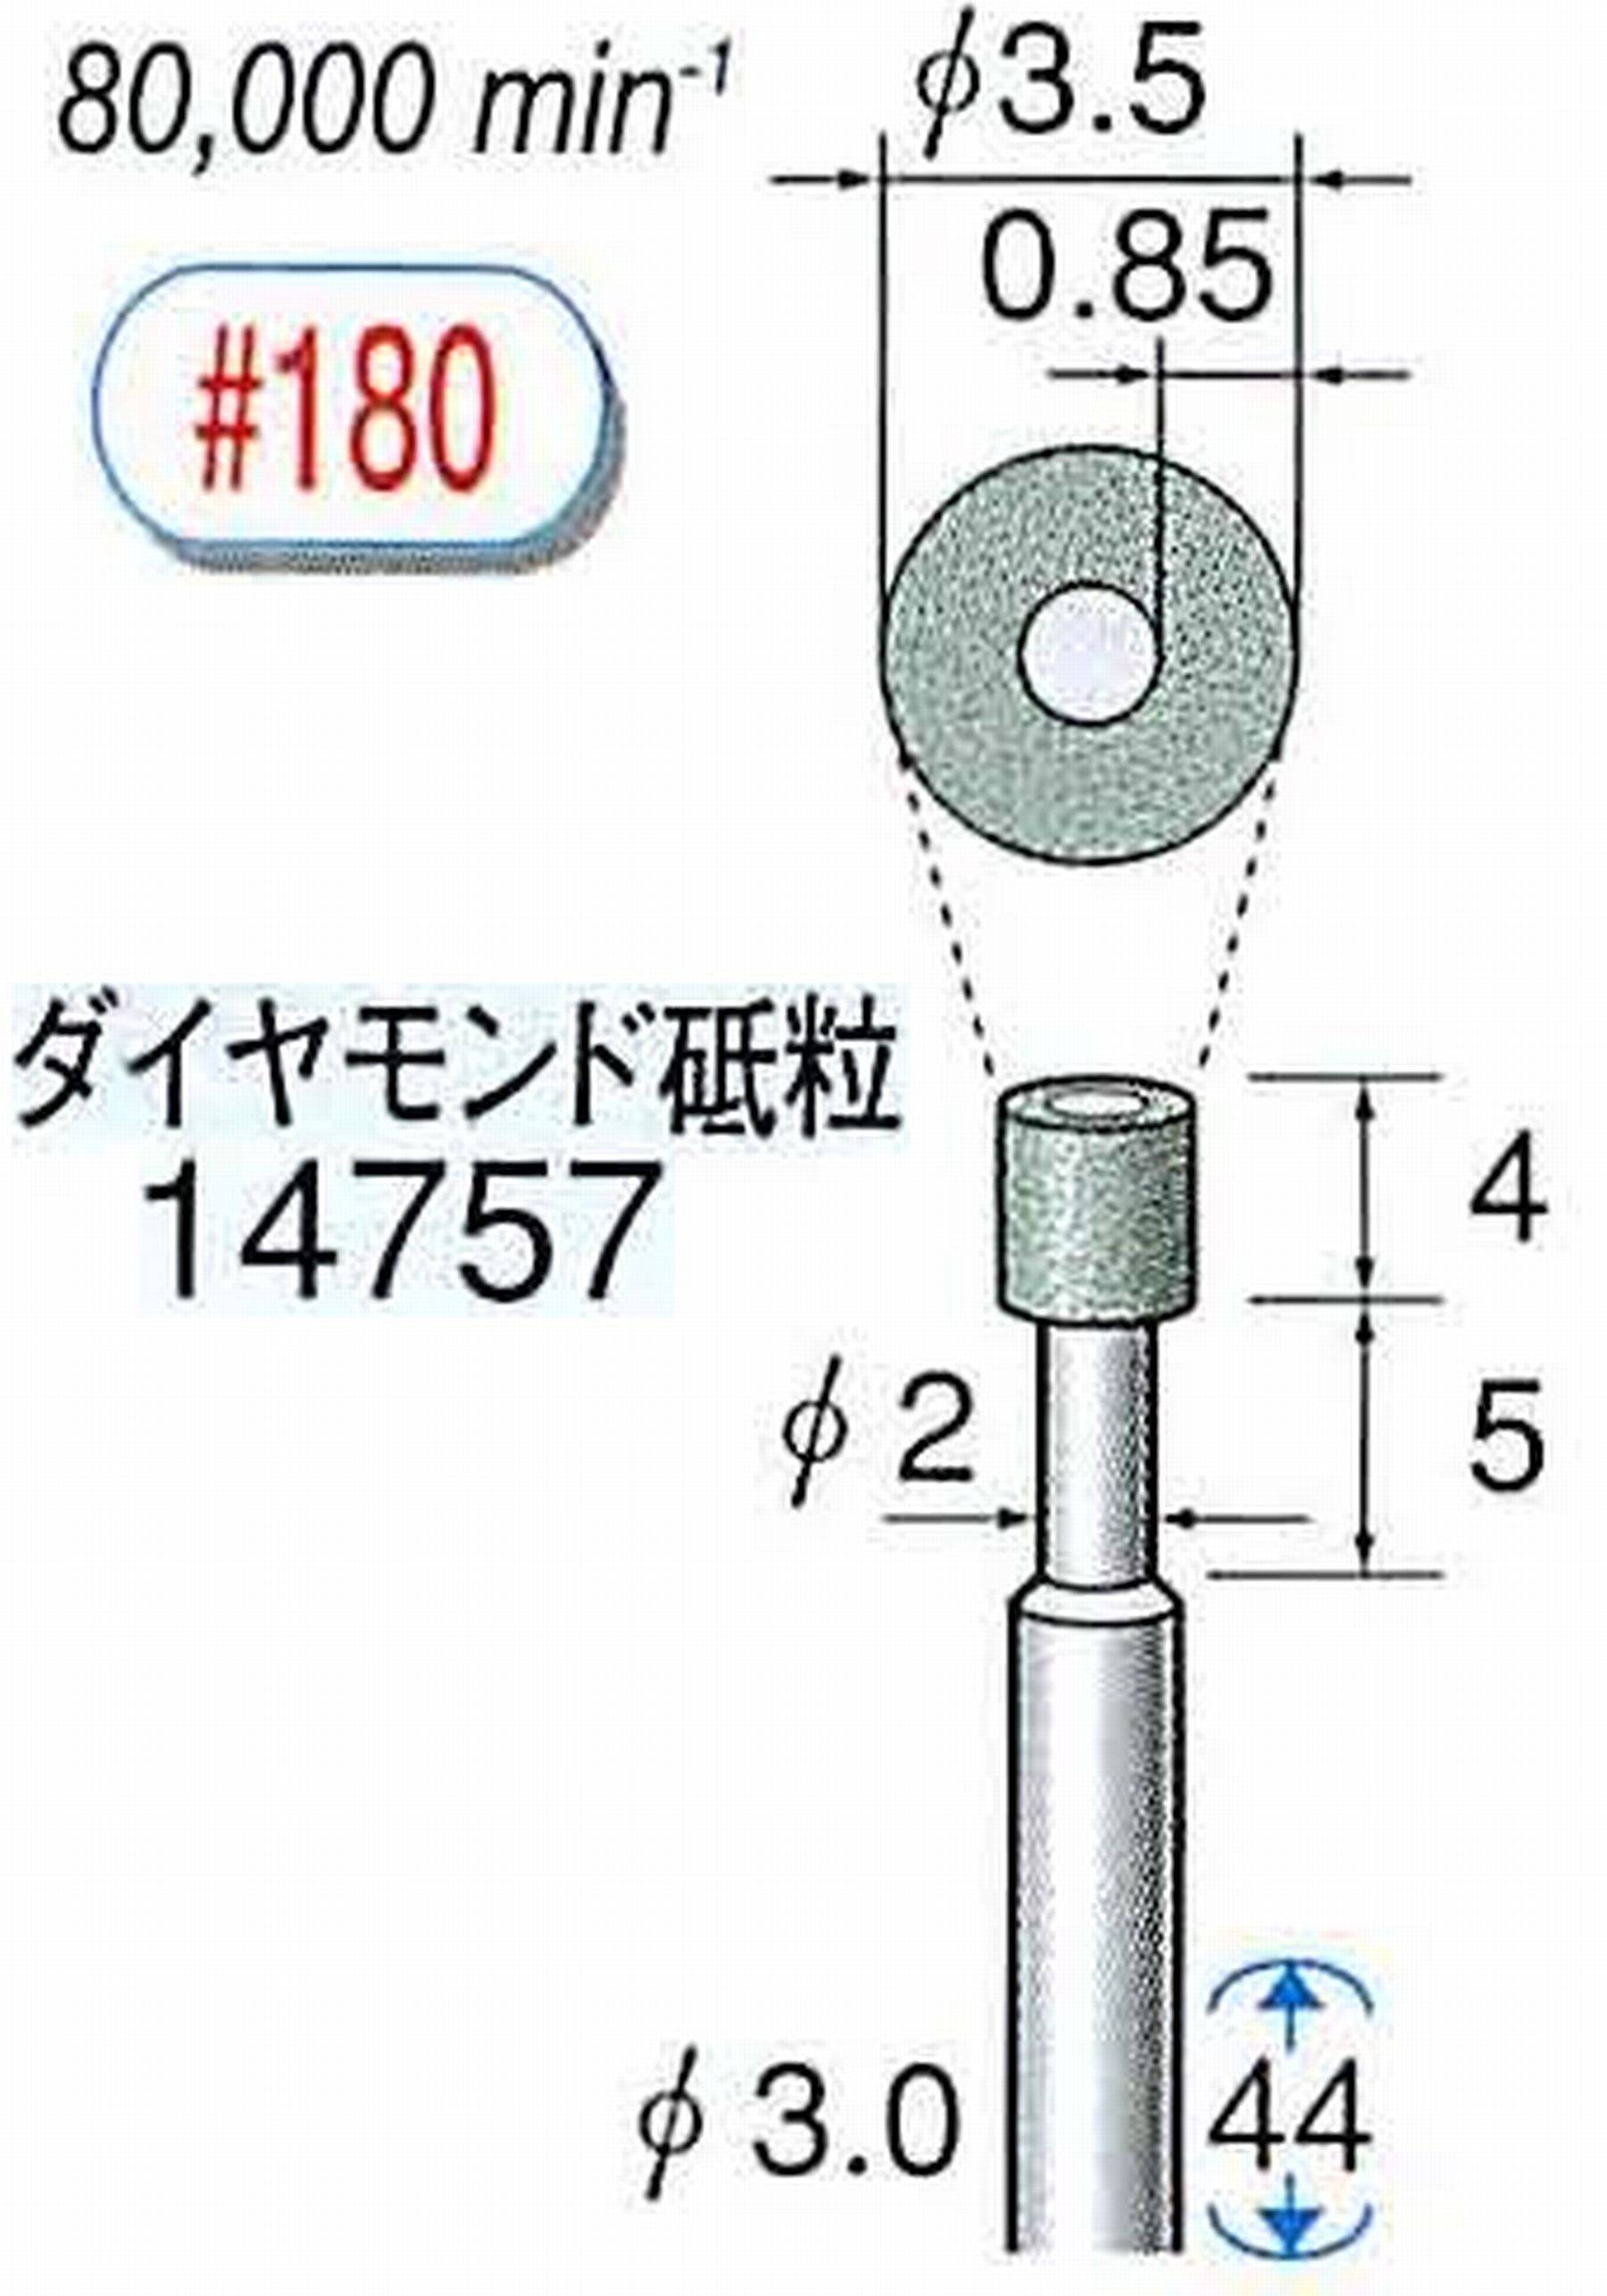 ナカニシ/NAKANISHI ビトリファイドダイヤモンド砥石 ダイヤモンド砥粒 軸径(シャンク)φ3.0mm 14757